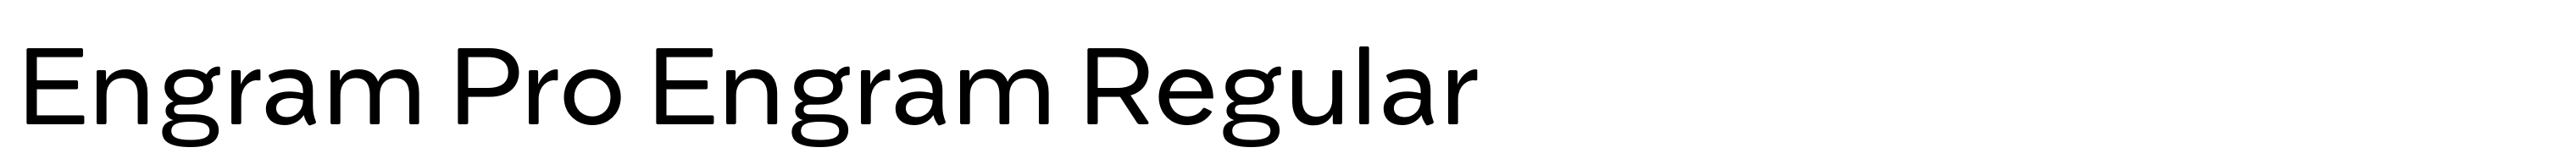 Engram Pro Engram Regular